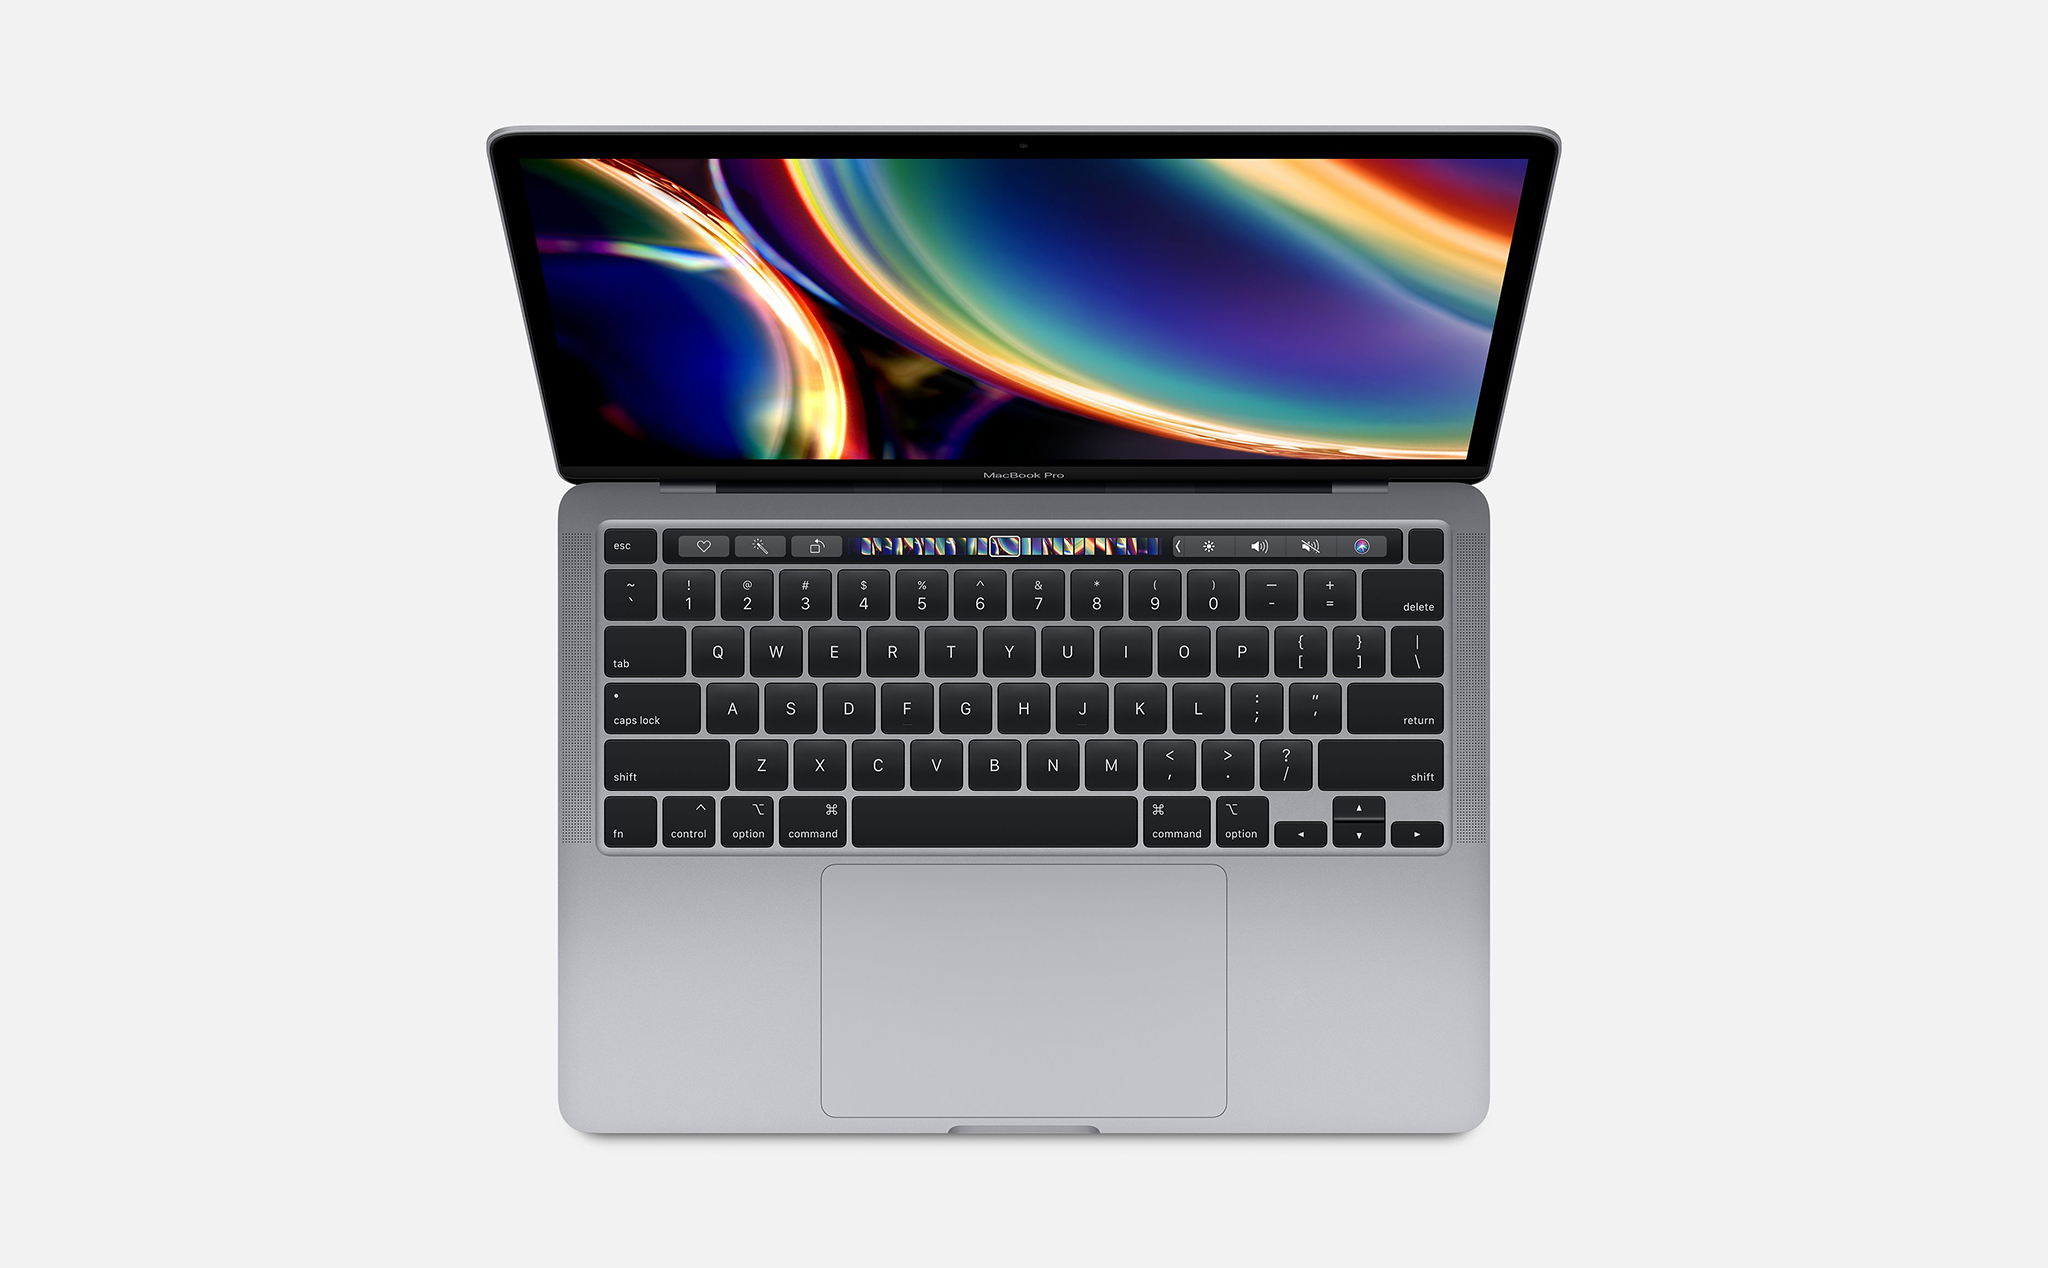 MacBook Pro 13" mới: Bàn phím Magic Keyboard, chip Intel thế hệ 10, giá từ 1.299 USD